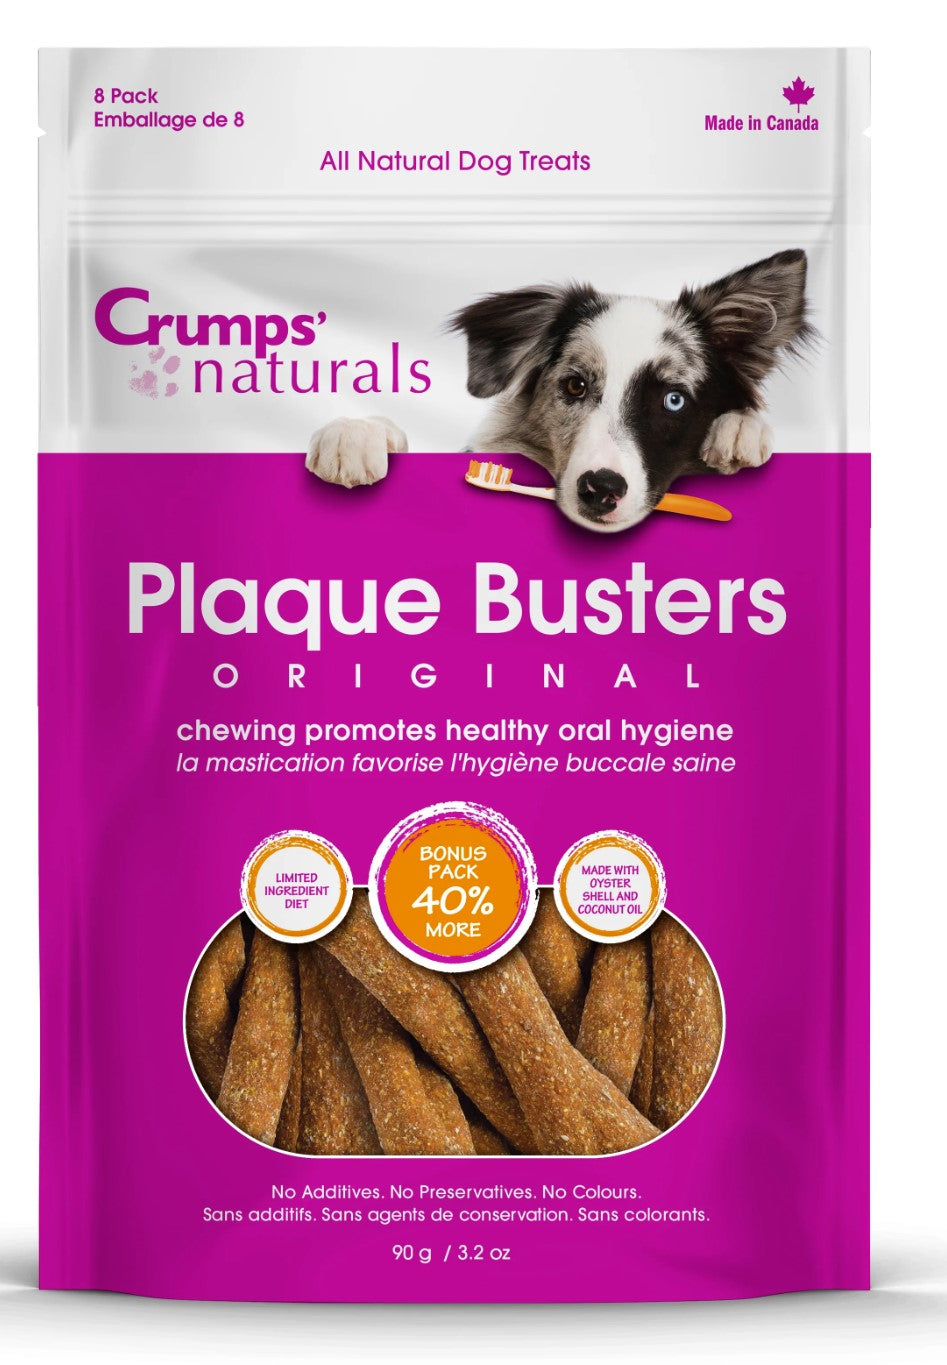 Crumps' Naturals Plaque Busters Original